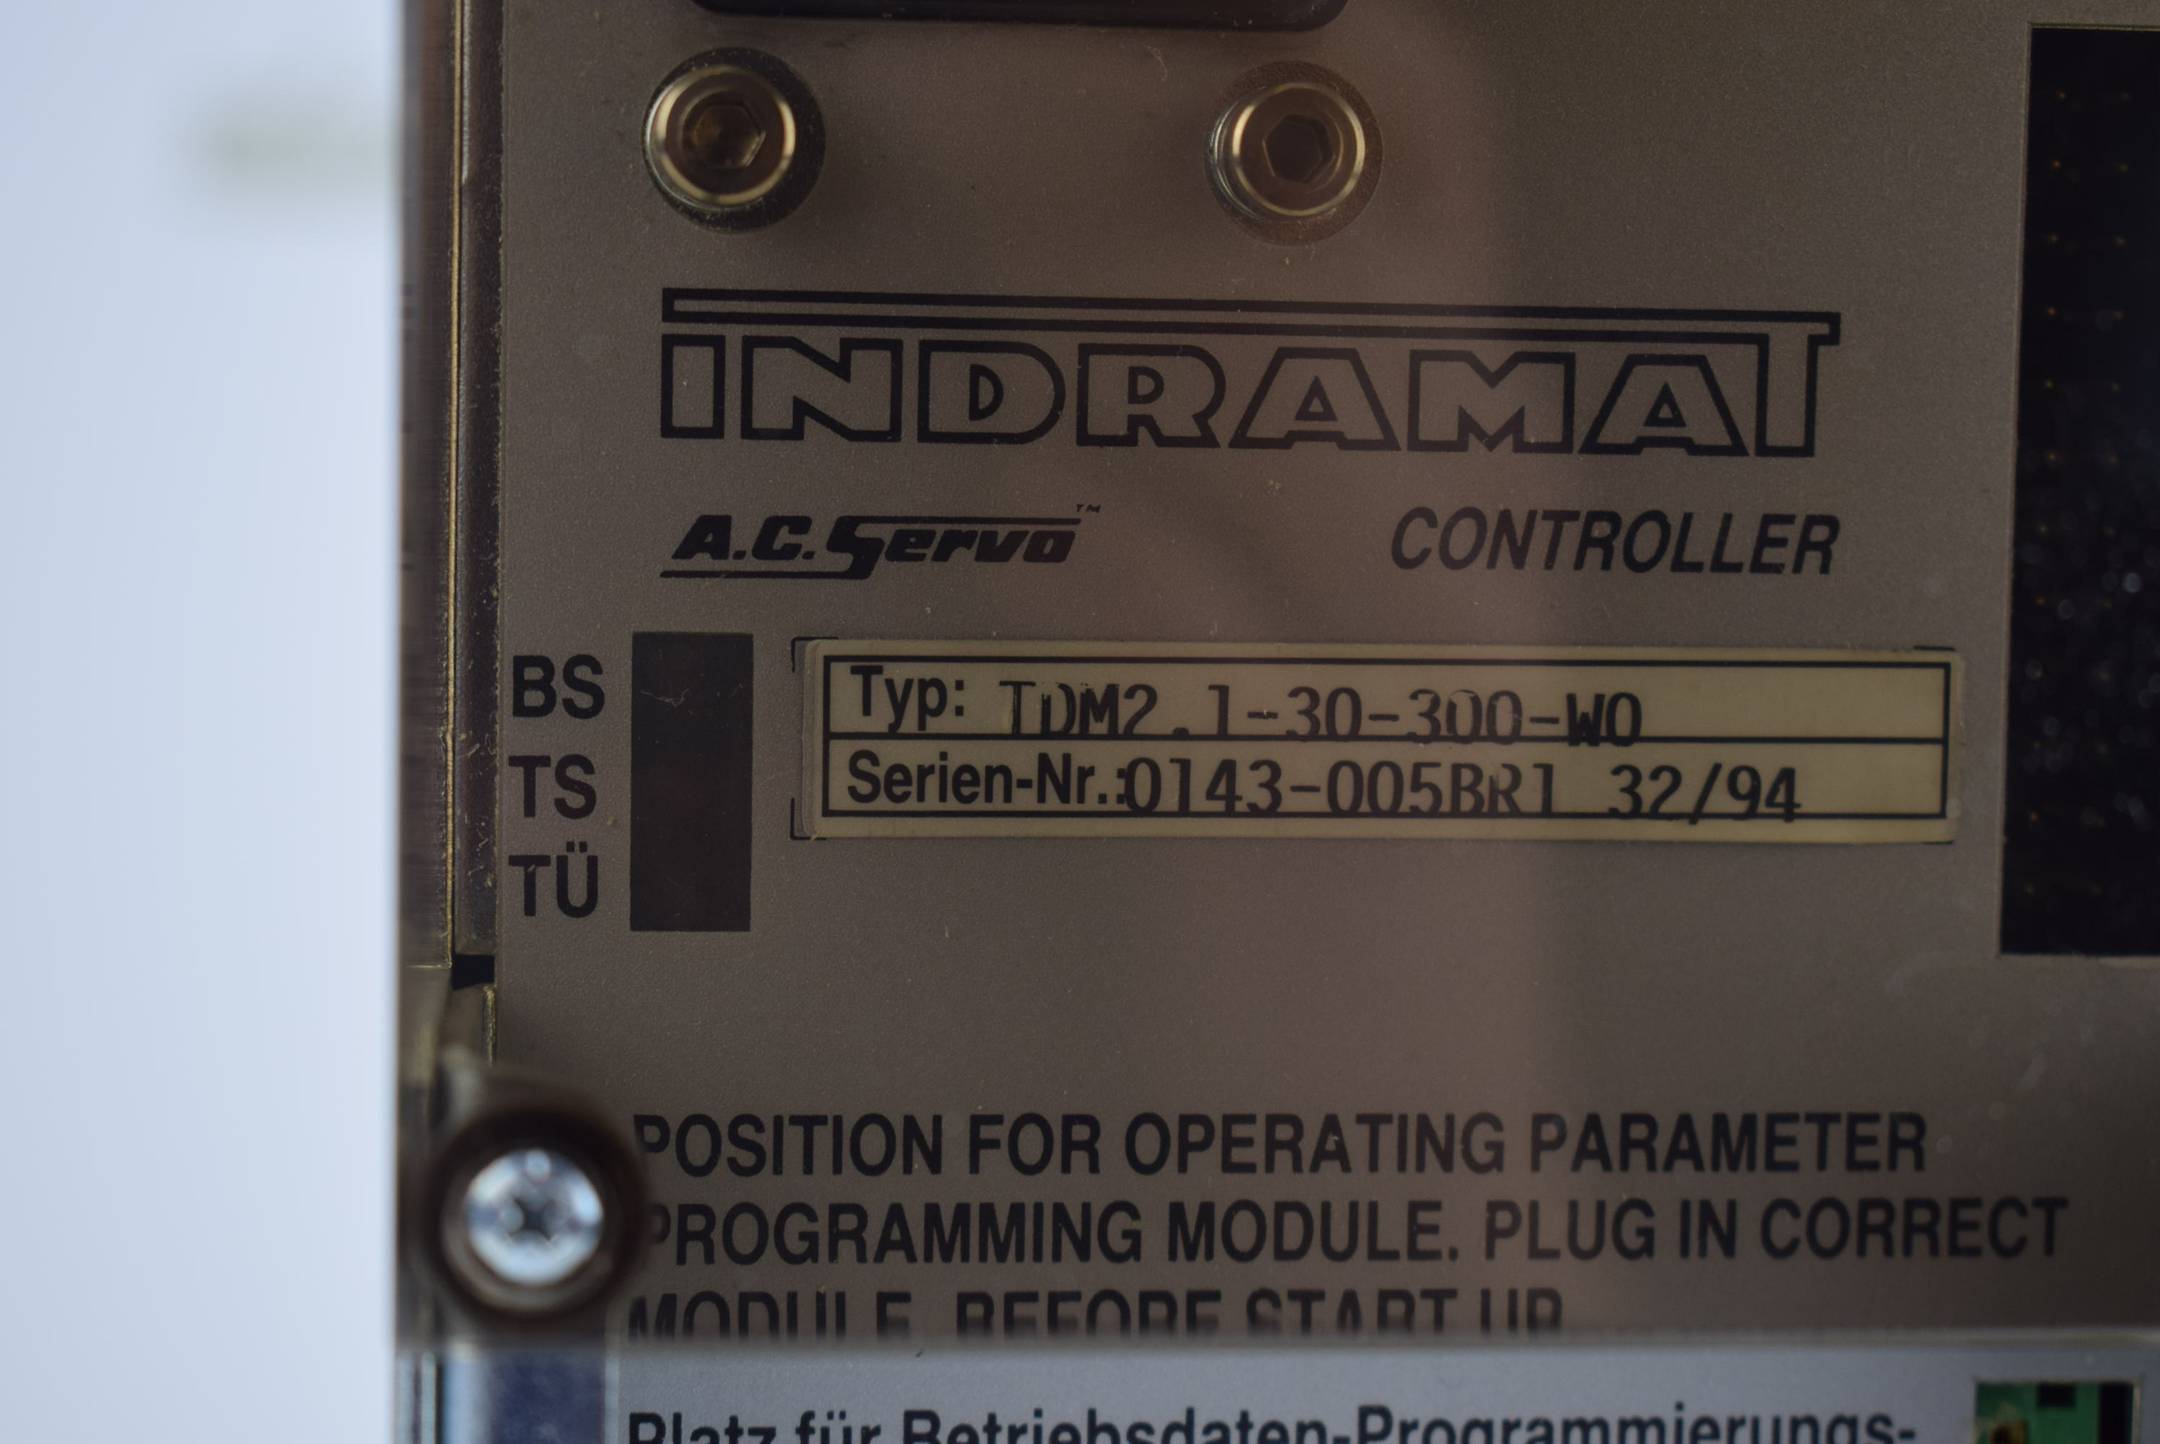 Indramat Servo Controller TDM 2.1-30-300-W0